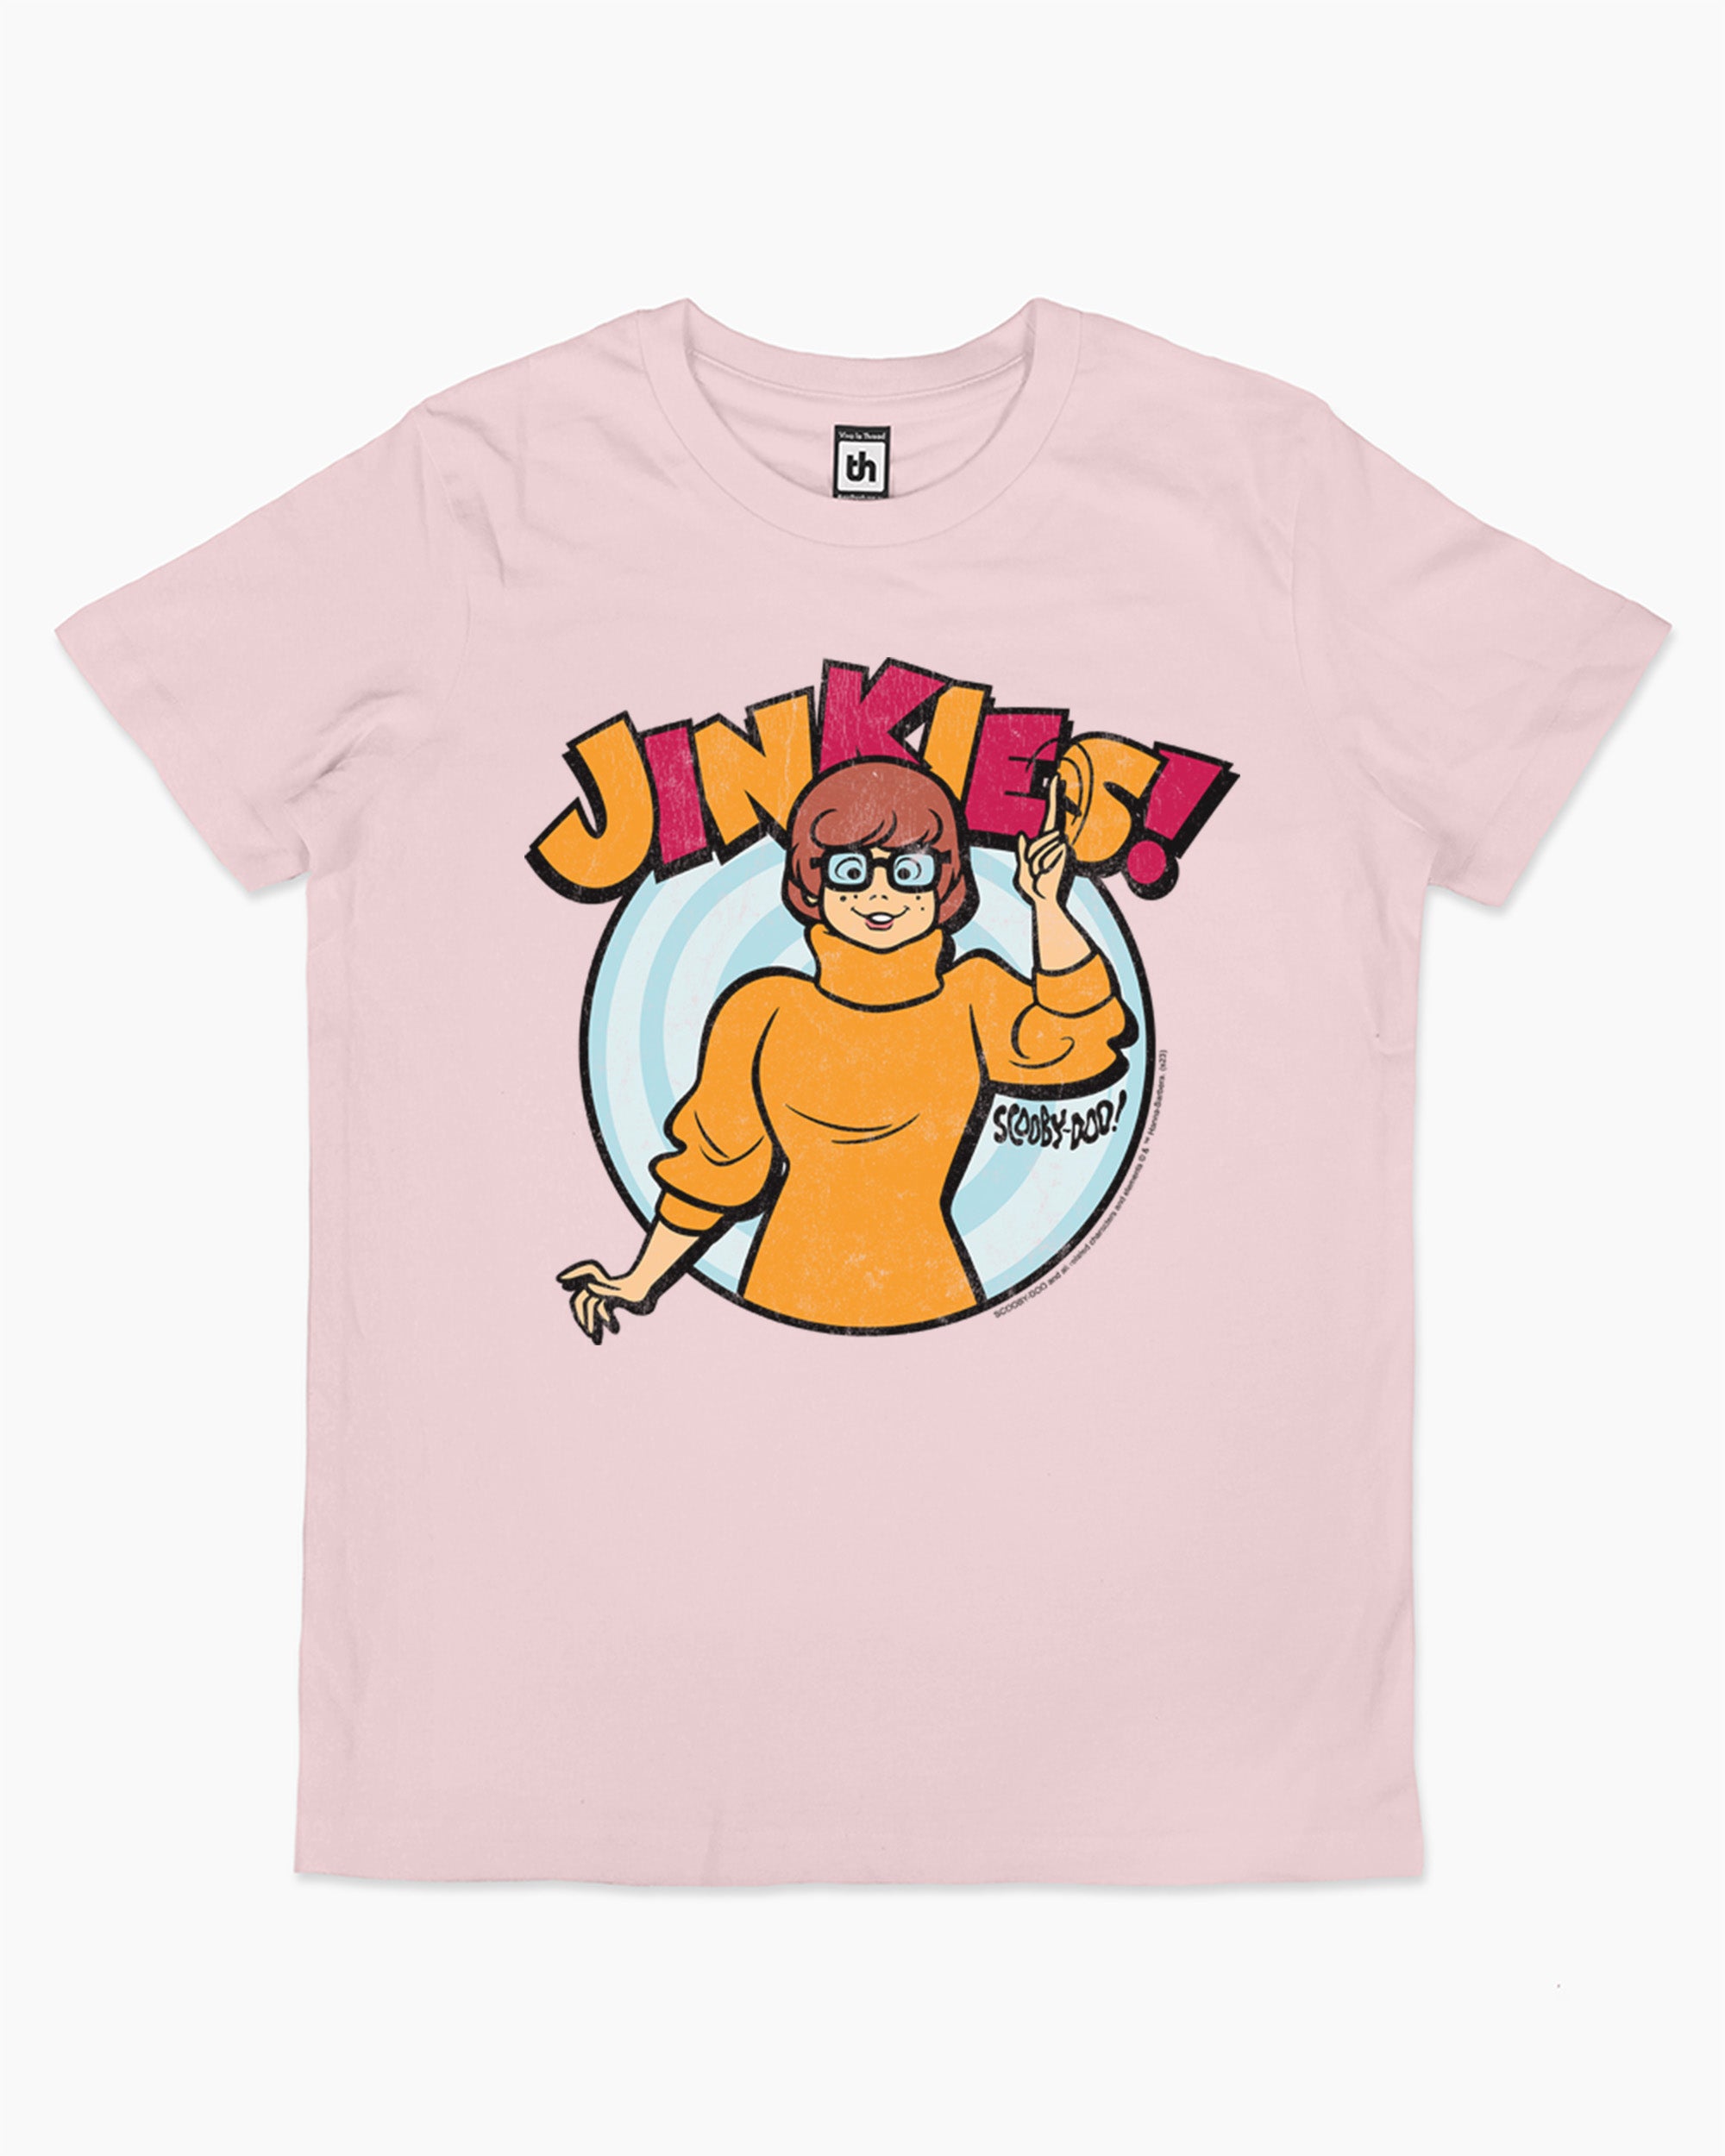 Jinkies Kids T-Shirt Australia Online Pink